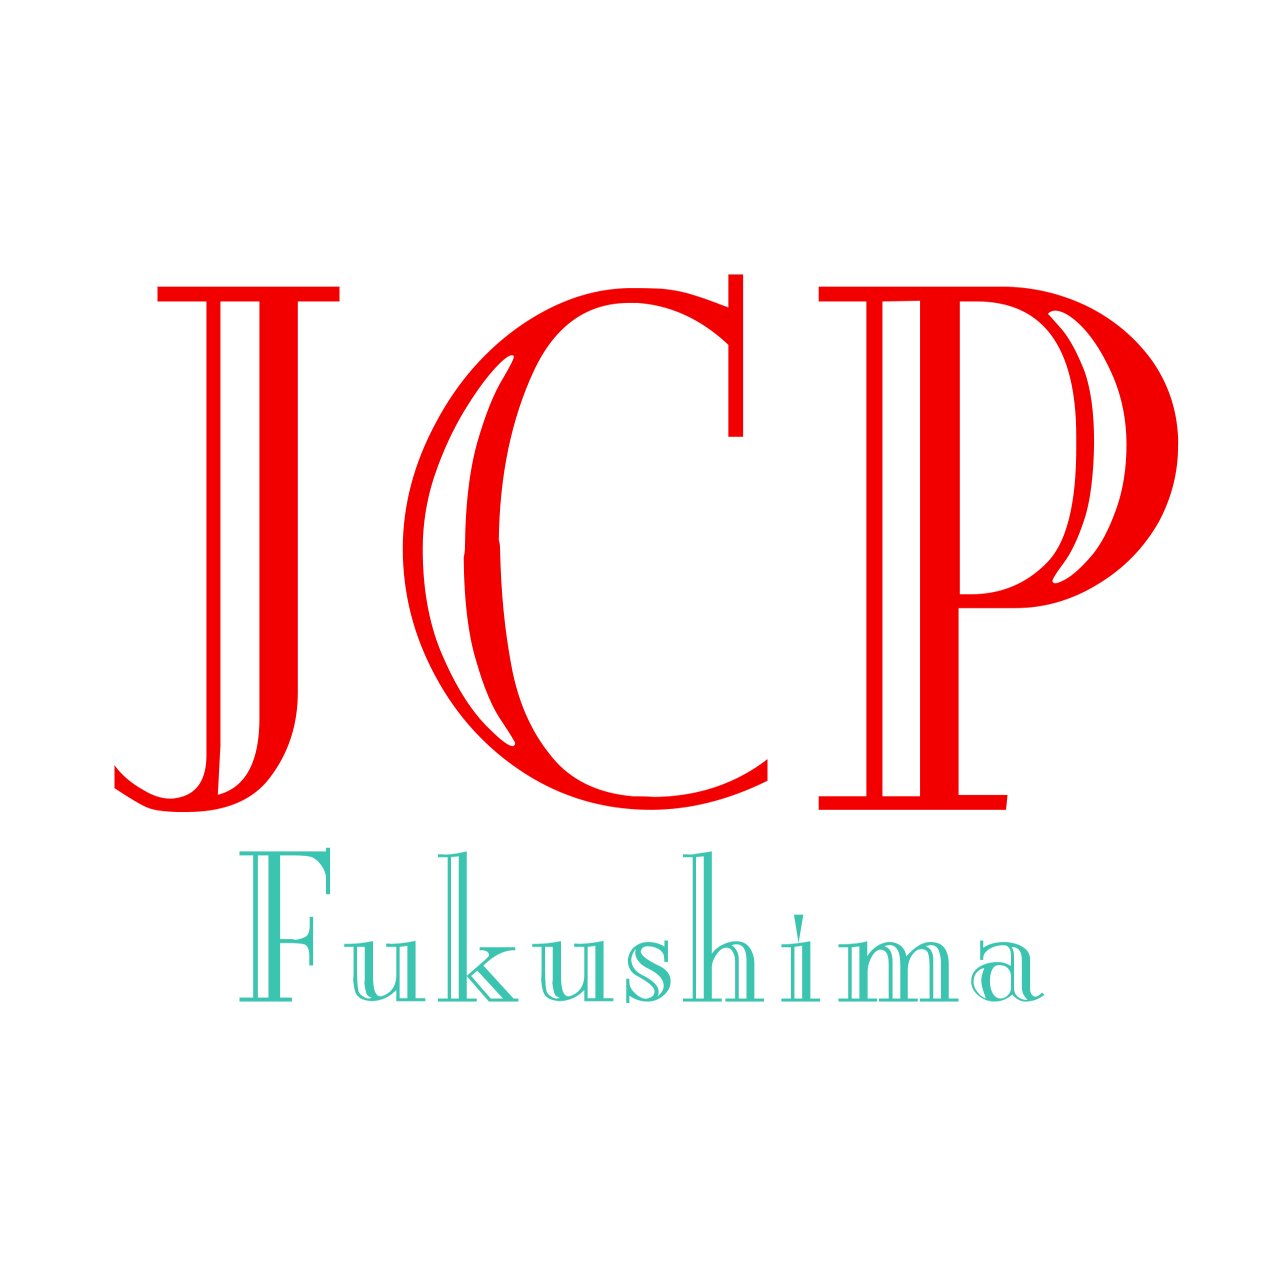 日本共産党福島県委員会のTwitterです。住民の暮らしと生業の再建こそ本当の復興。地域が主役の再エネ進め原発ゼロの日本を。生業を守るため原発ALPS処理水海洋放出は中止を。
連絡先： jcpfnews@gmail.com